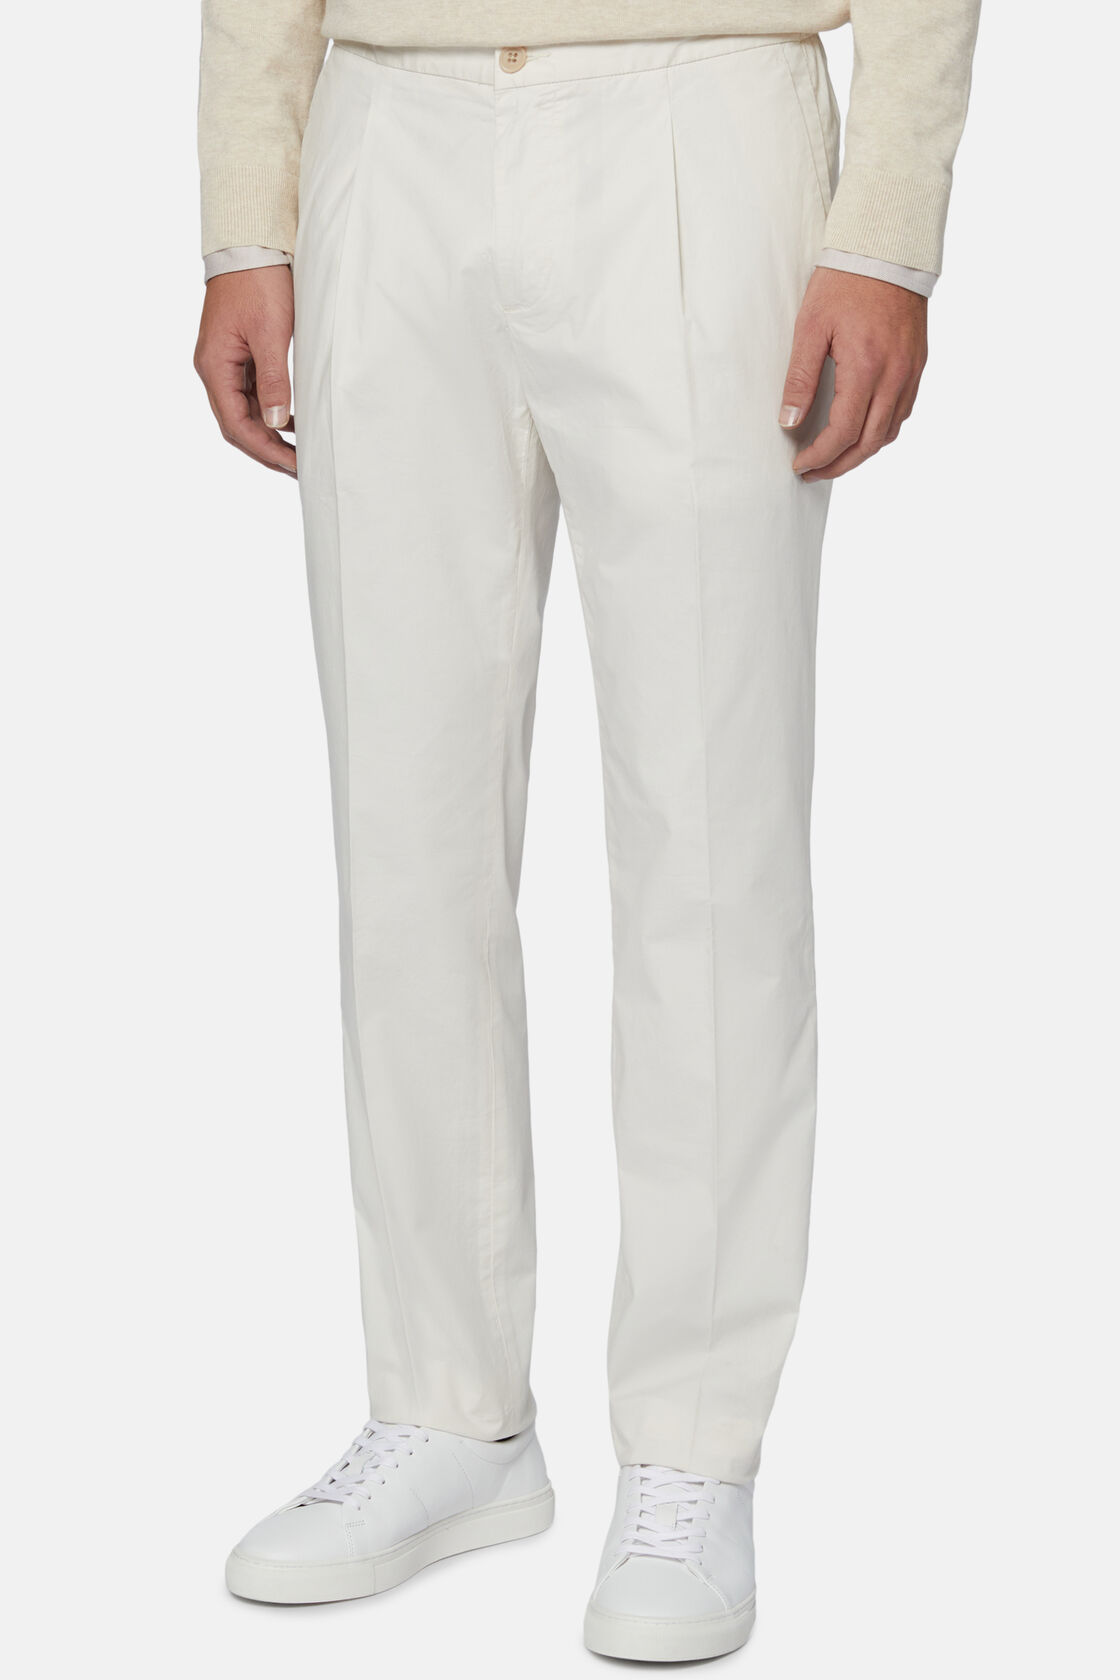 Pantalon en Coton Extensible avec Pinces, Blanc, hi-res